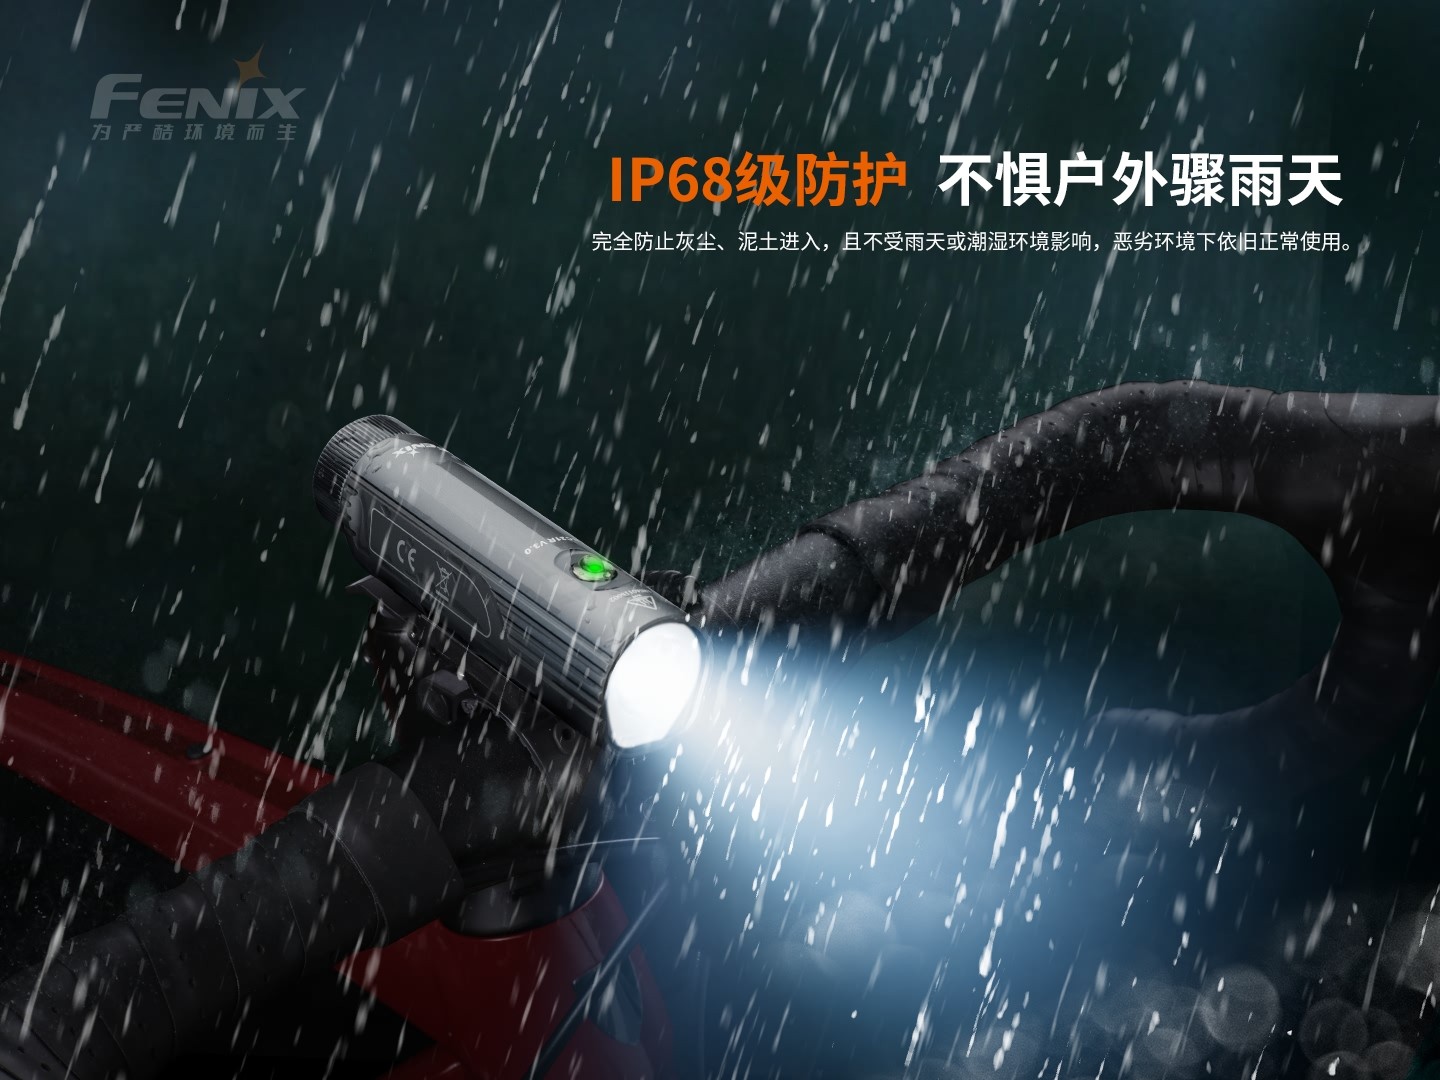 菲尼克斯（Fenix）BC21R V3.0 便携式高亮公路自行车灯-3